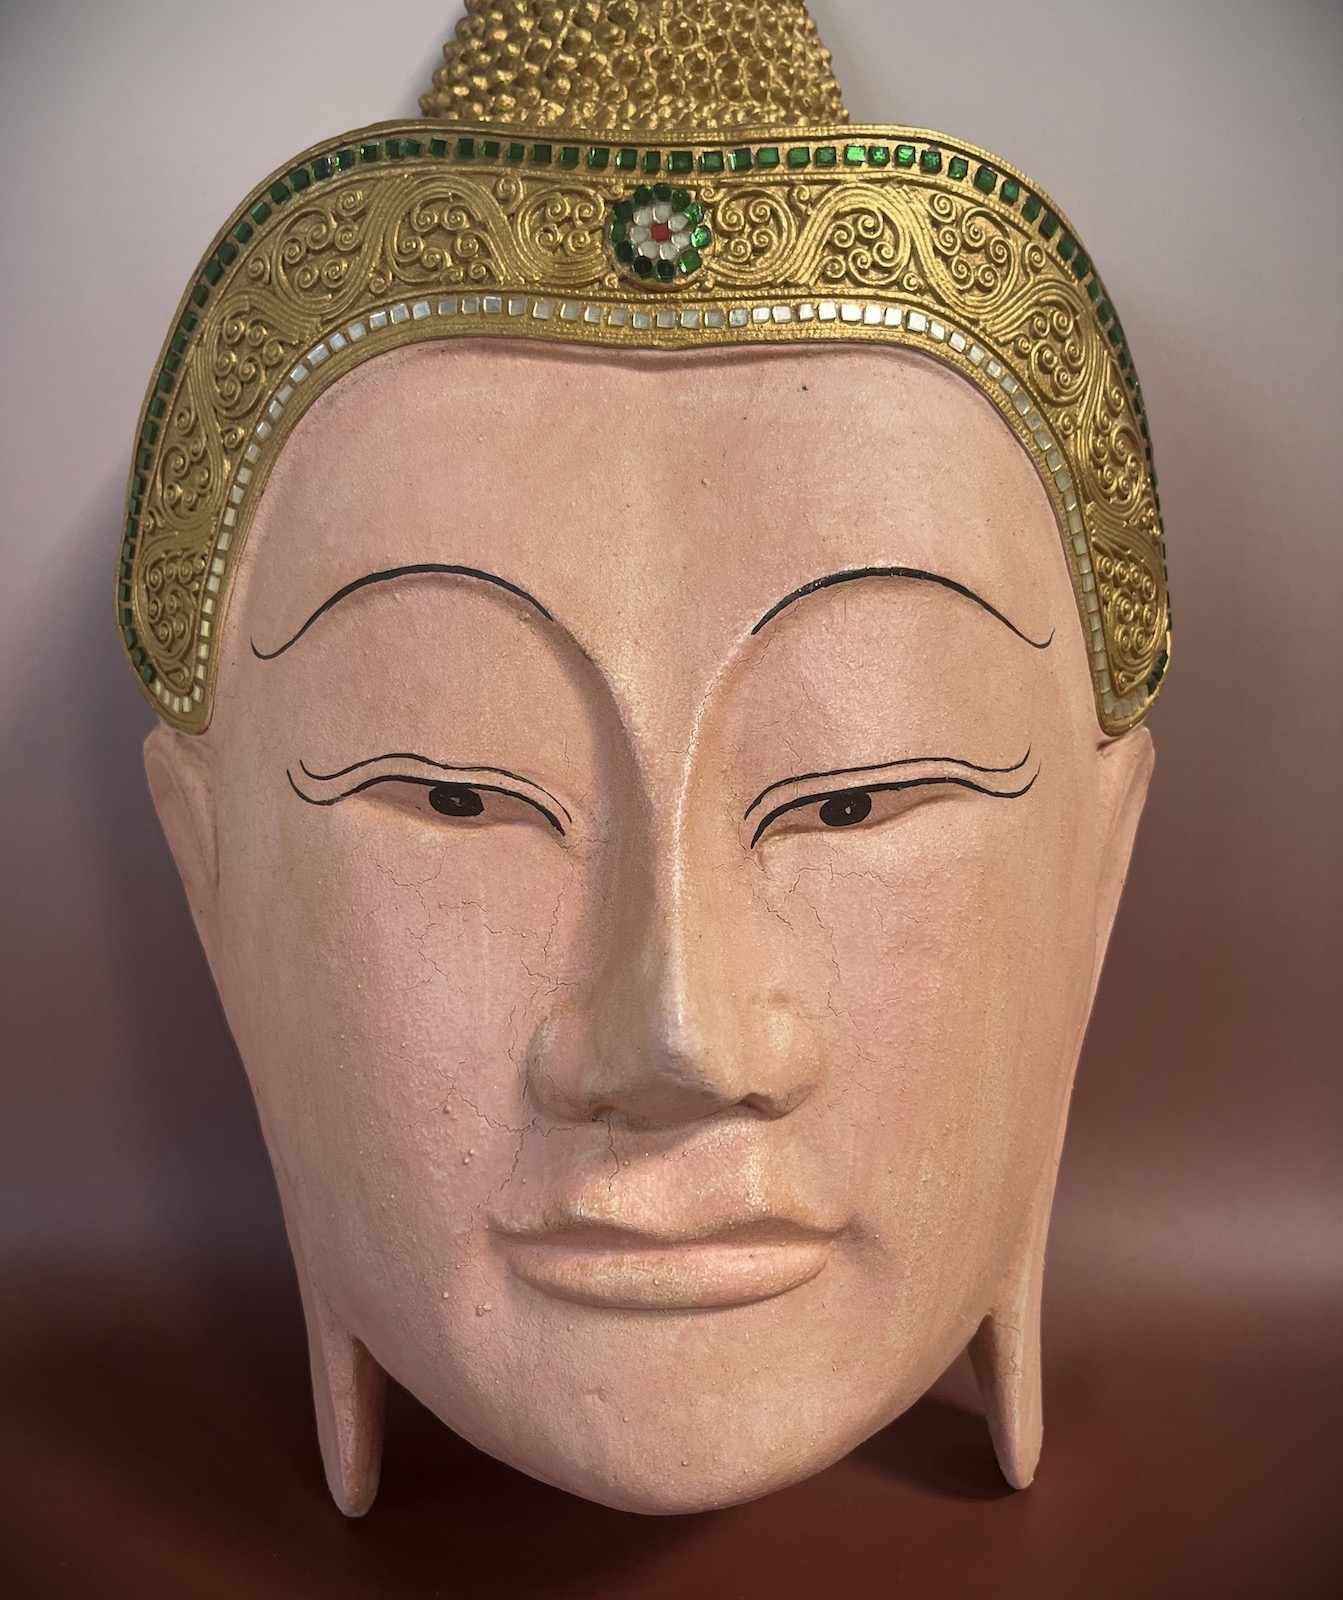 Asien 50cm LifeStyle Buddha Skulptur Kopf groß Thailand Holz Maske Buddhafigur